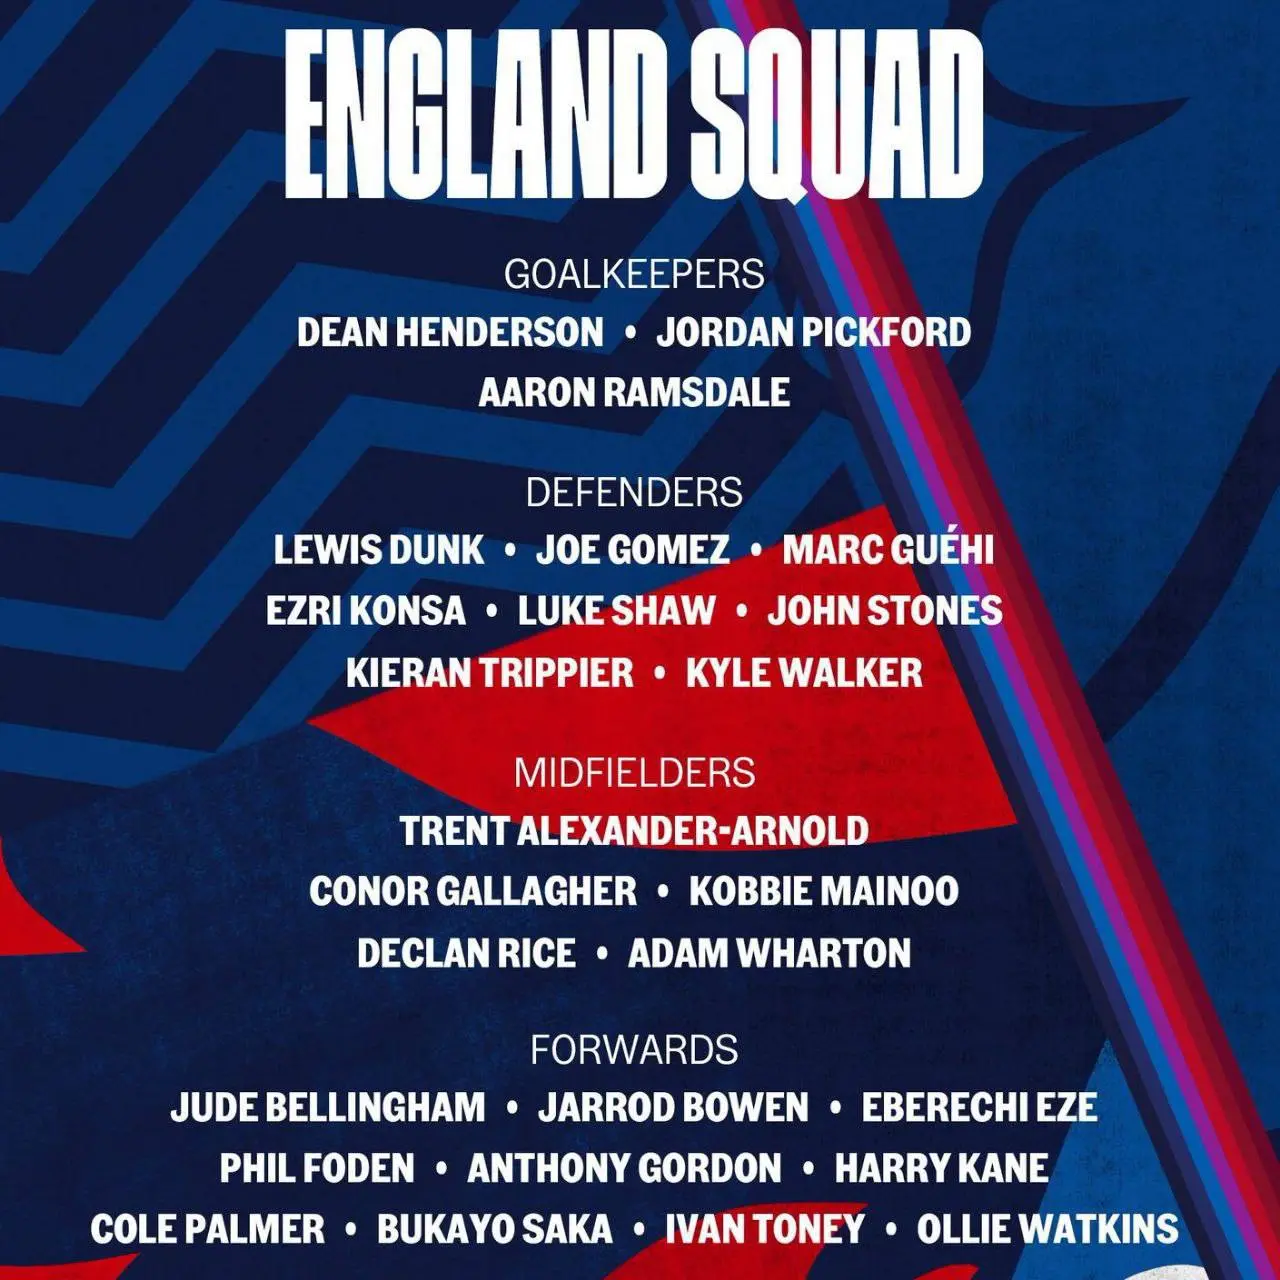 لیست نهایی تیم ملی انگلیس برای یورو 2024 اعلام شد